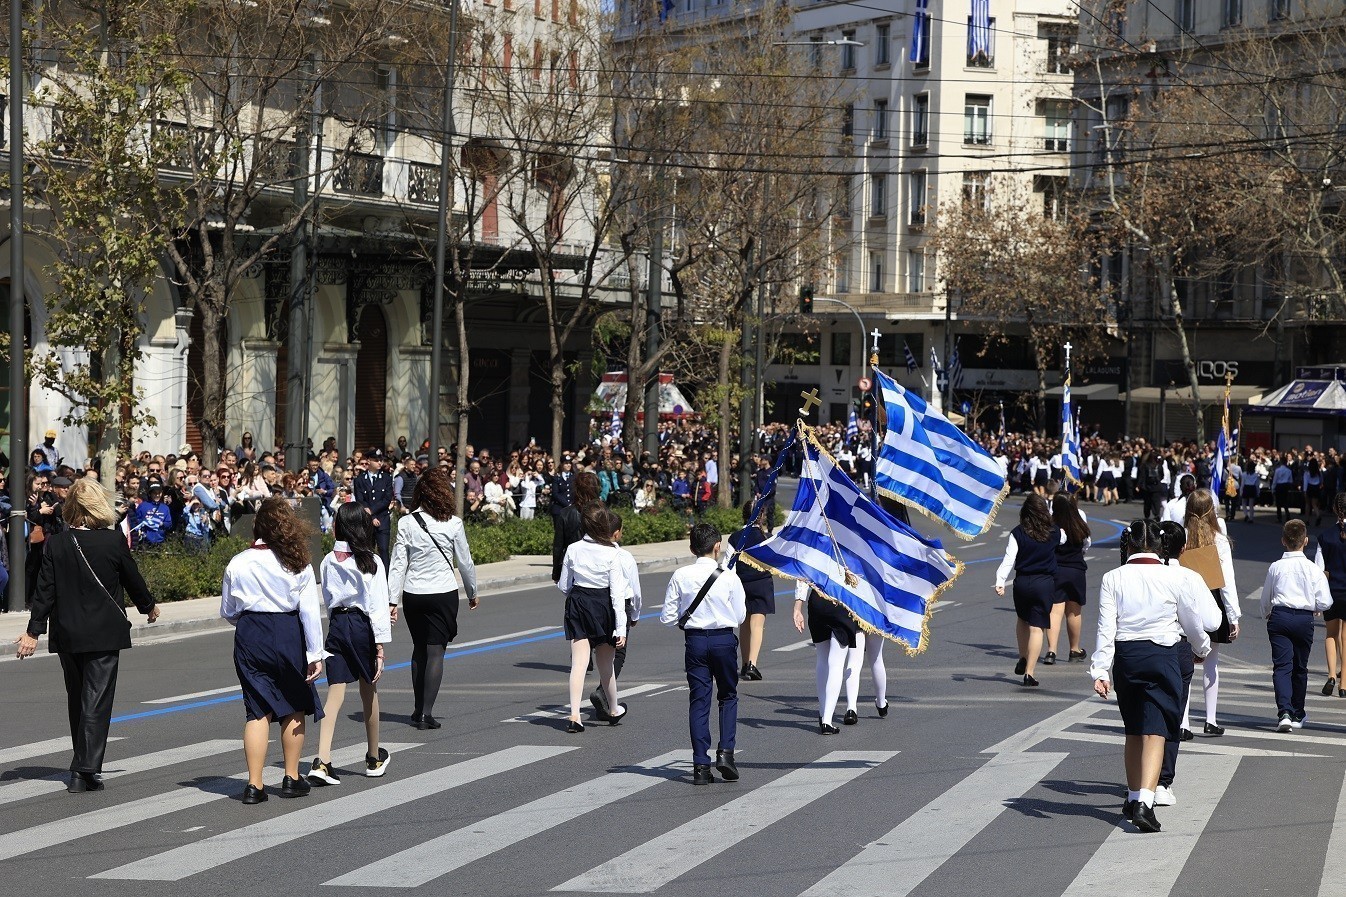 25η Μαρτίου: Κλειστό το κέντρο της Αθήνας – Ολοκληρώθηκε η μαθητική παρέλαση (pics) (upd)